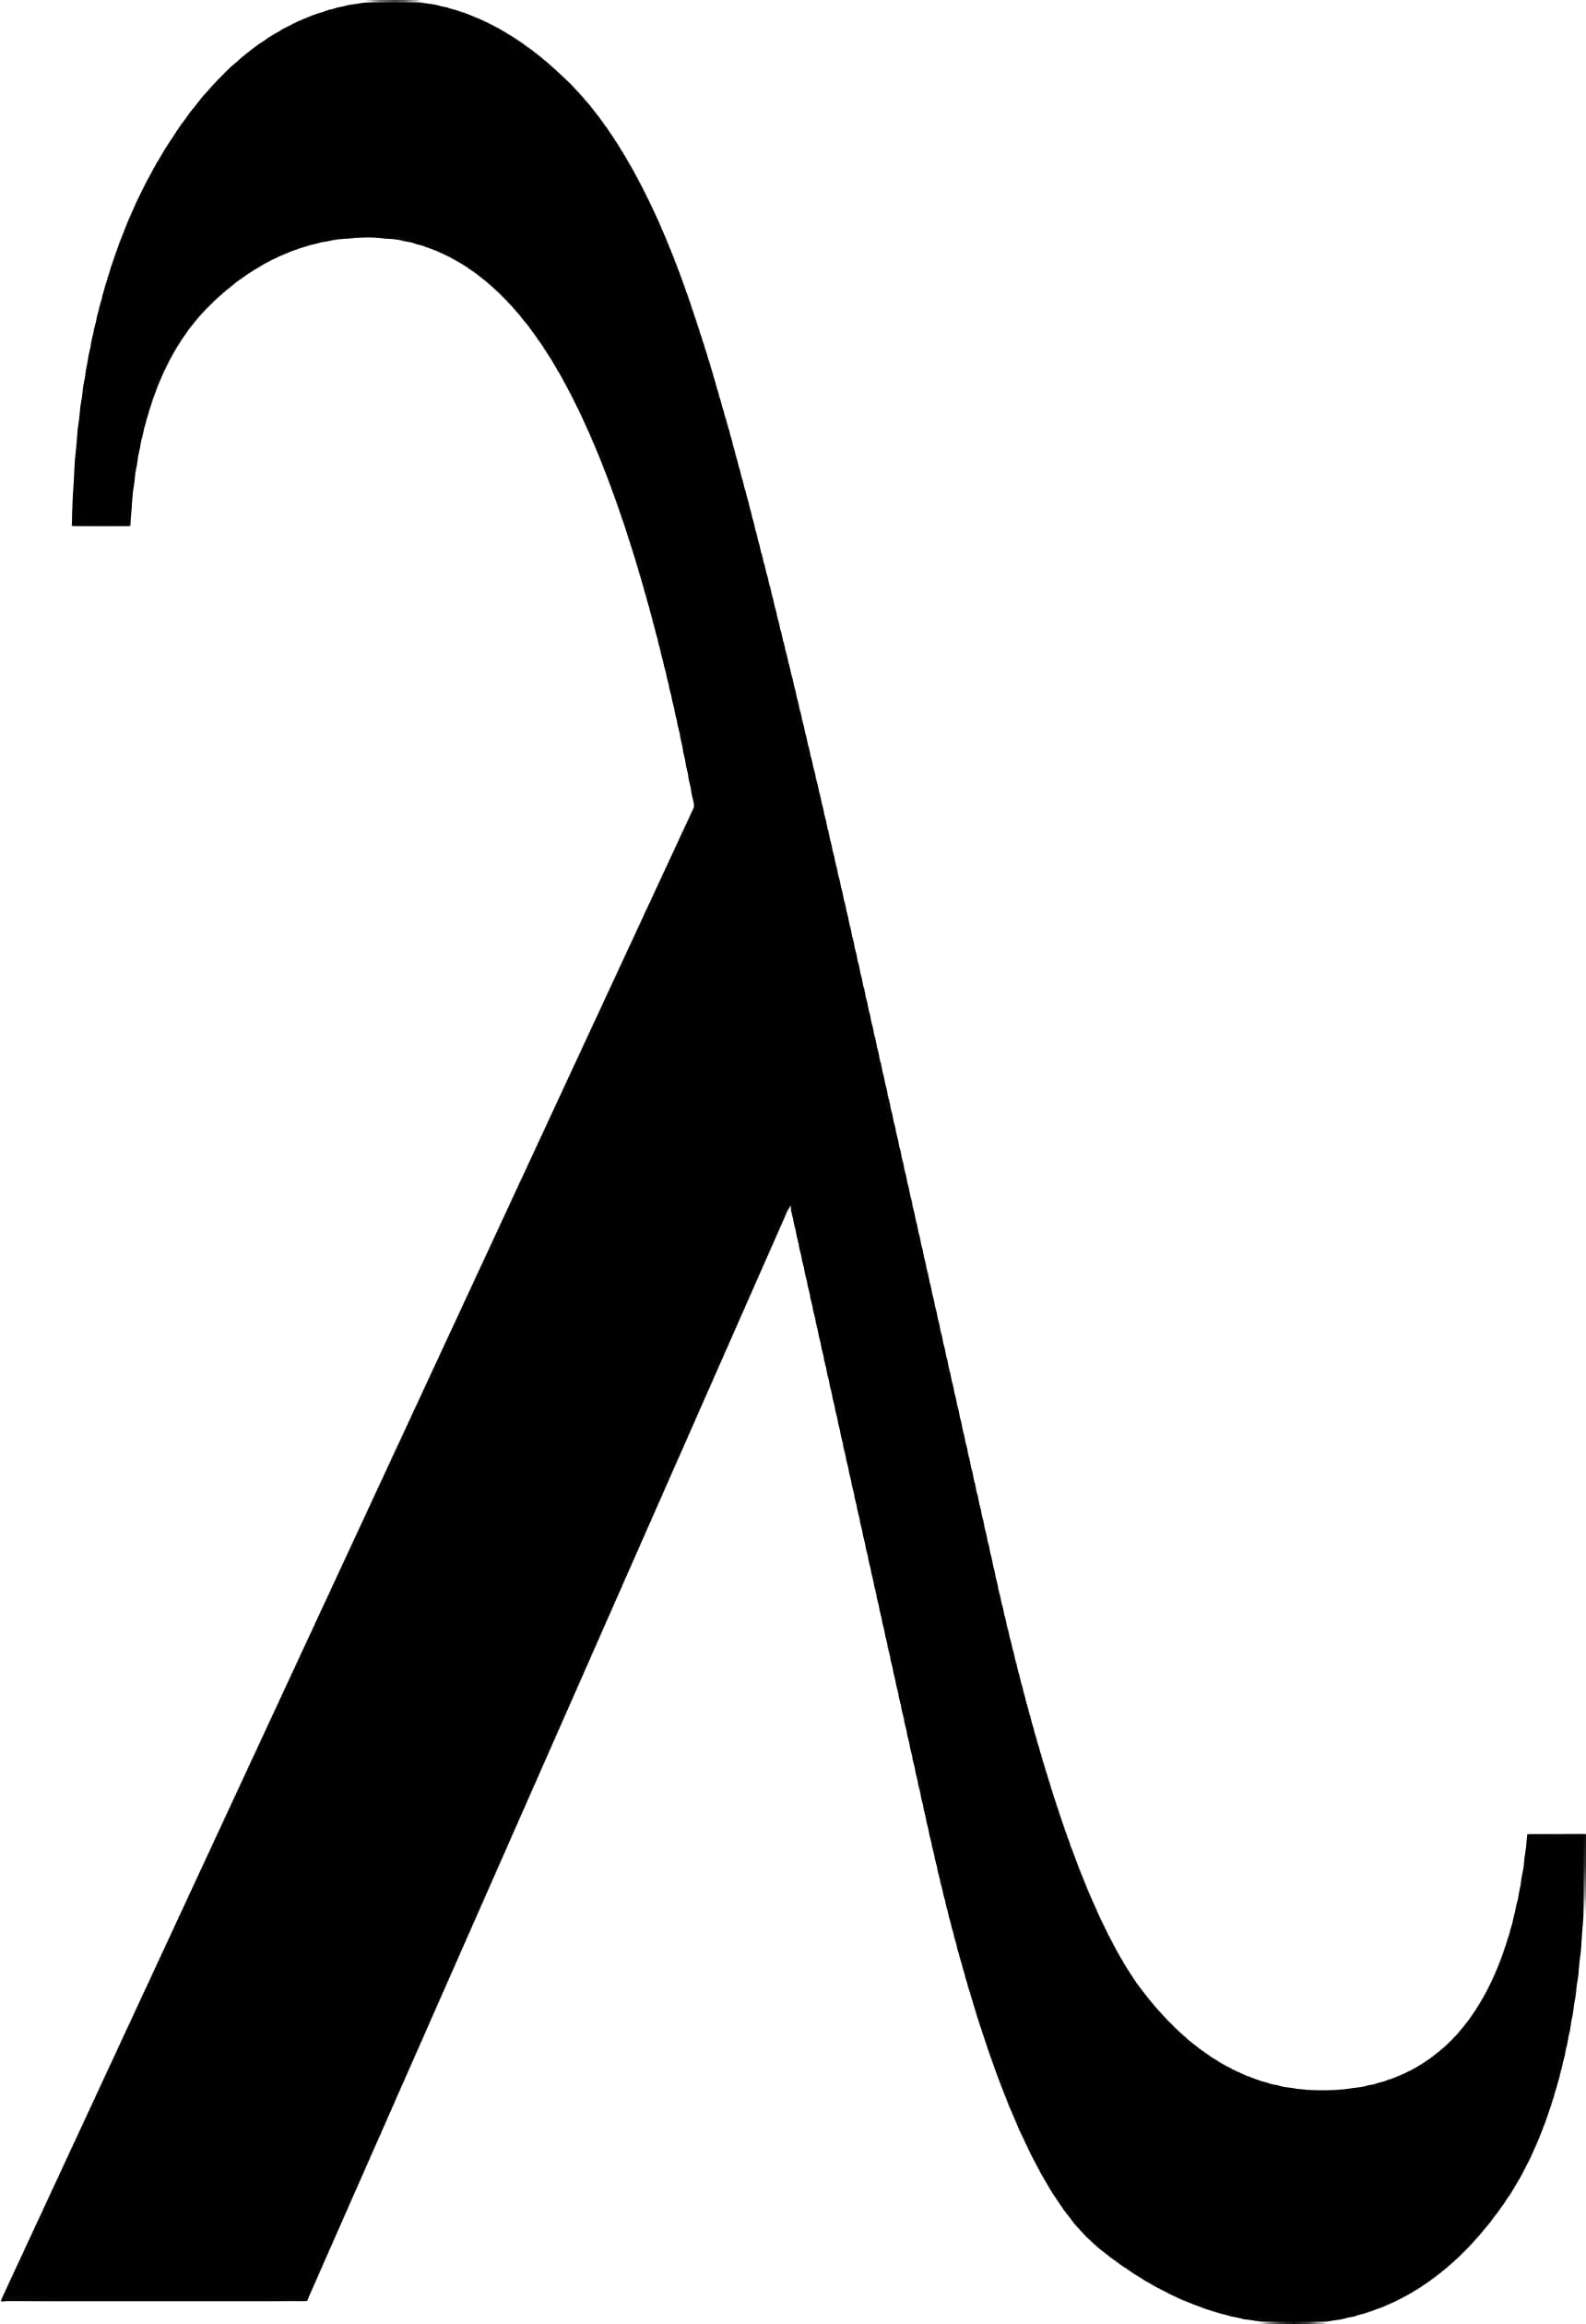 In programmazione informatica, una funzione anonima o funzione lambda è una funzione definita, e possibilmente chiamata, senza essere legata ad un identificatore